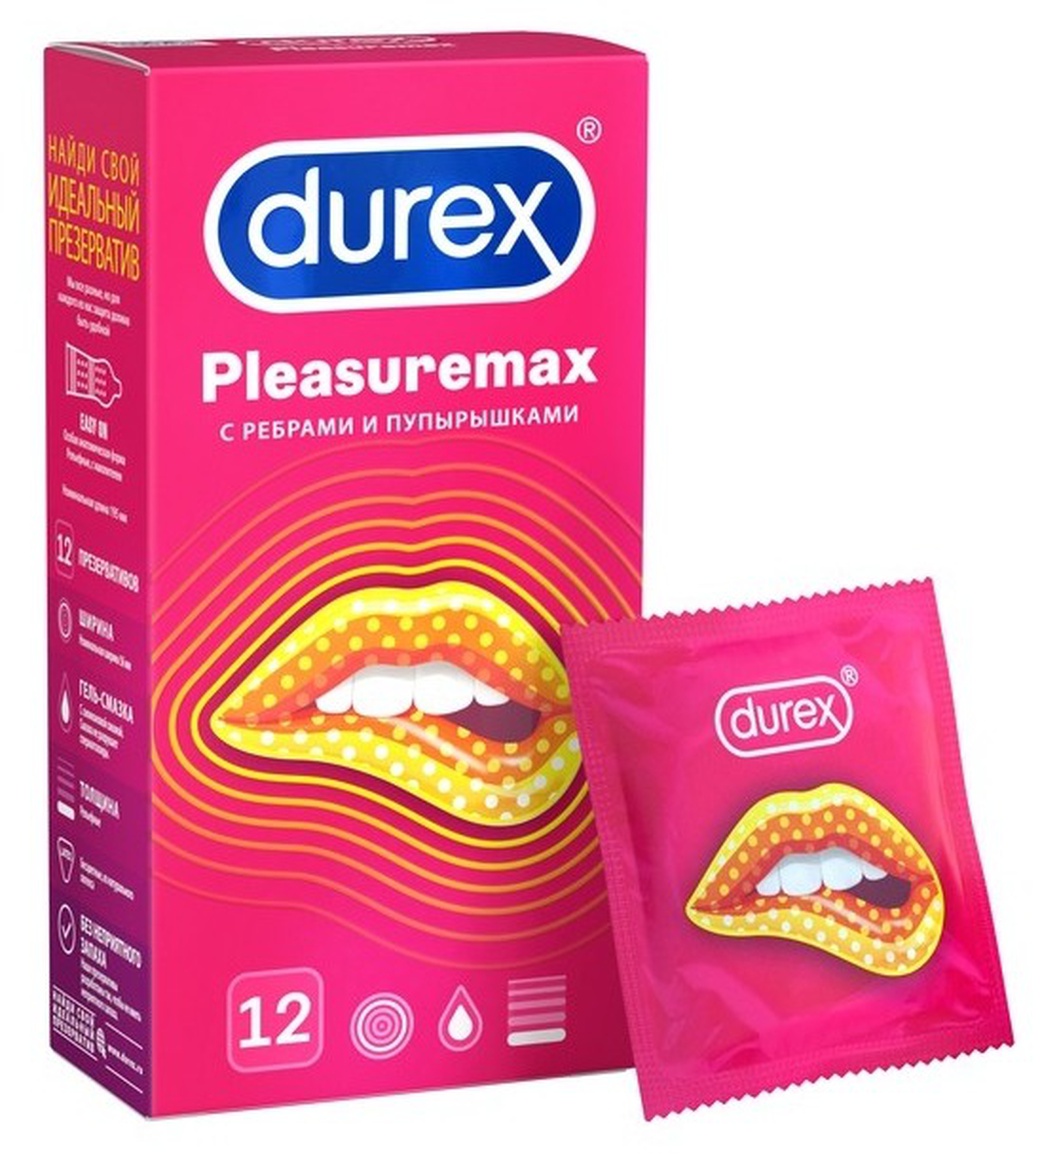 Презервативы Дюрекс Pleasuremax (ребра/пупыр) №12 фото